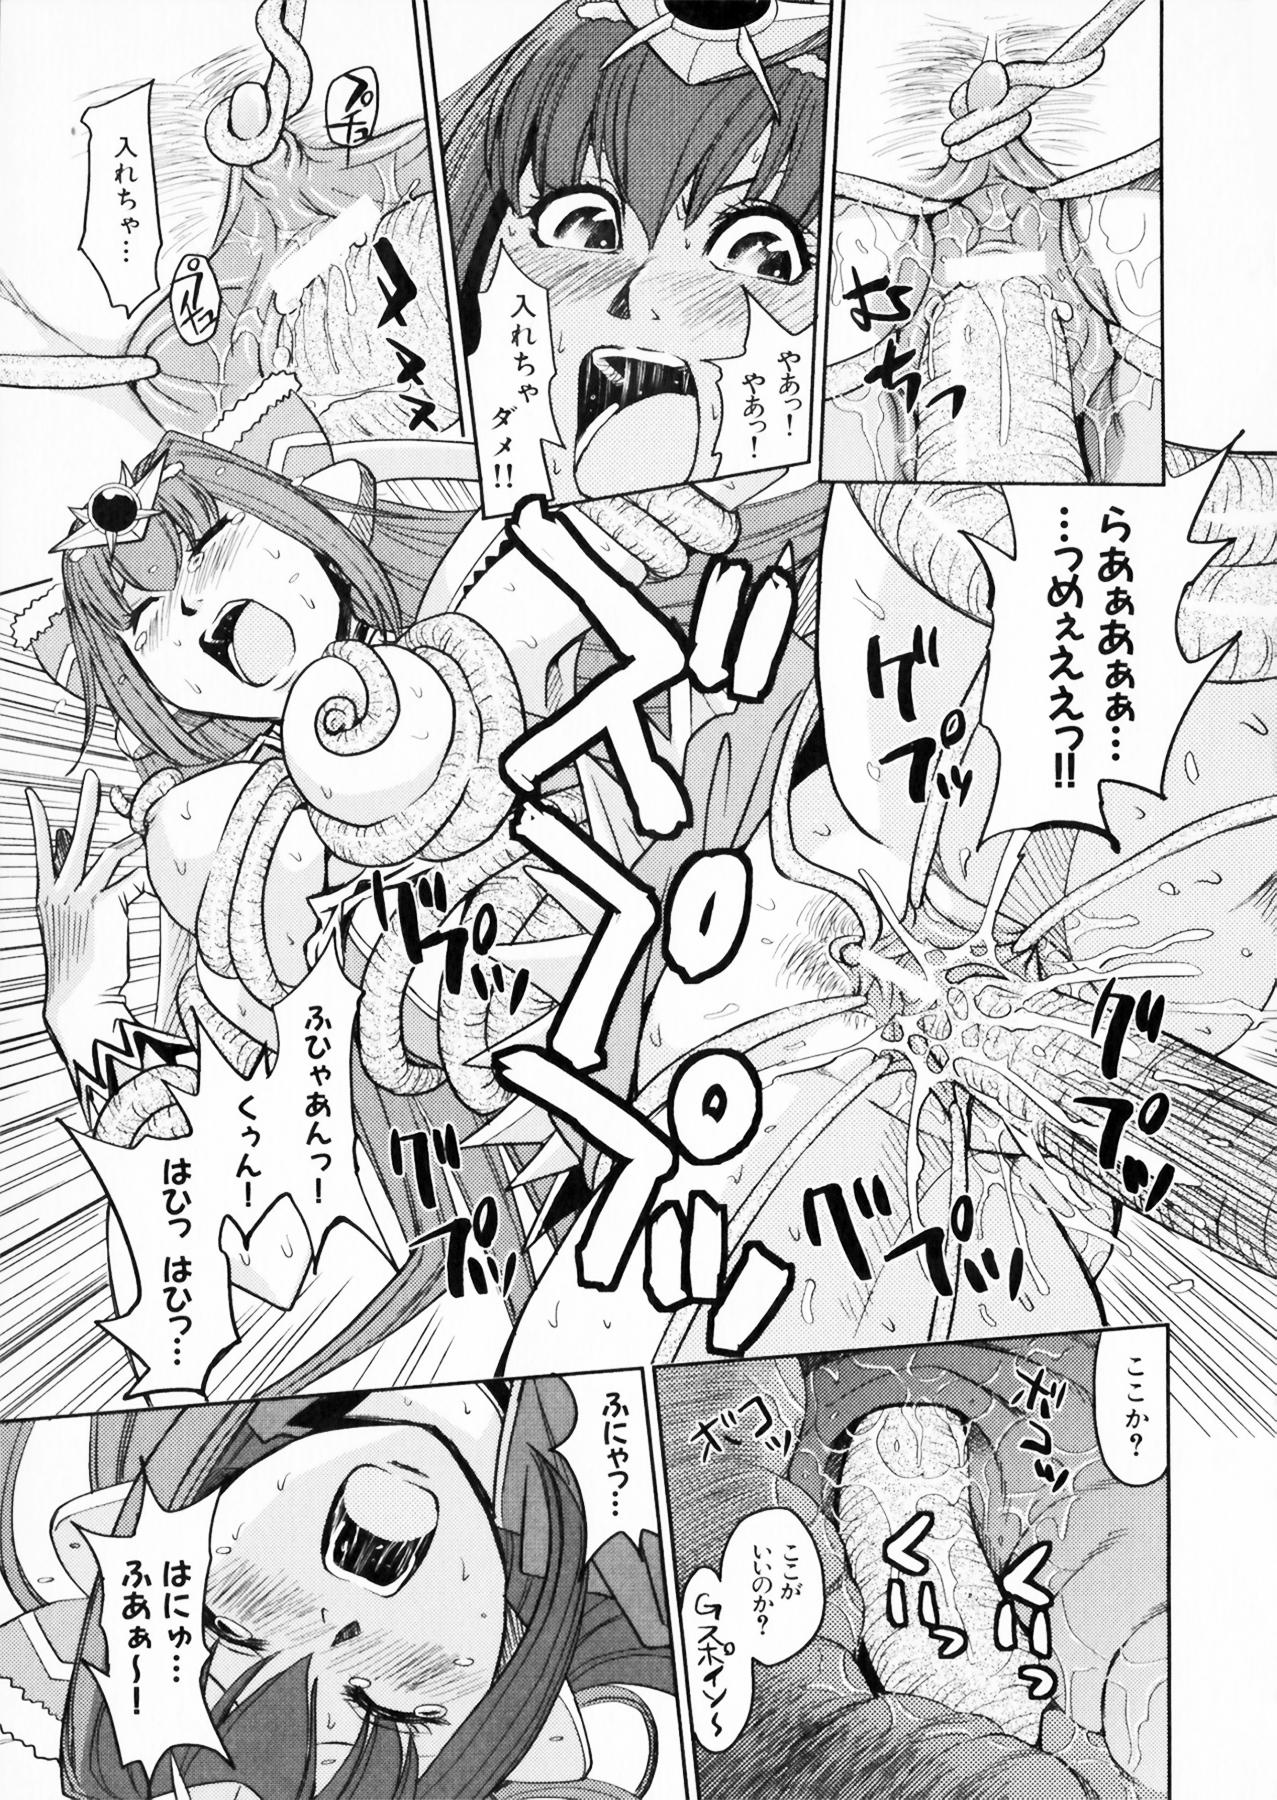 Suisei Tenshi Prima Veil Zwei Anthology Comic EX 139